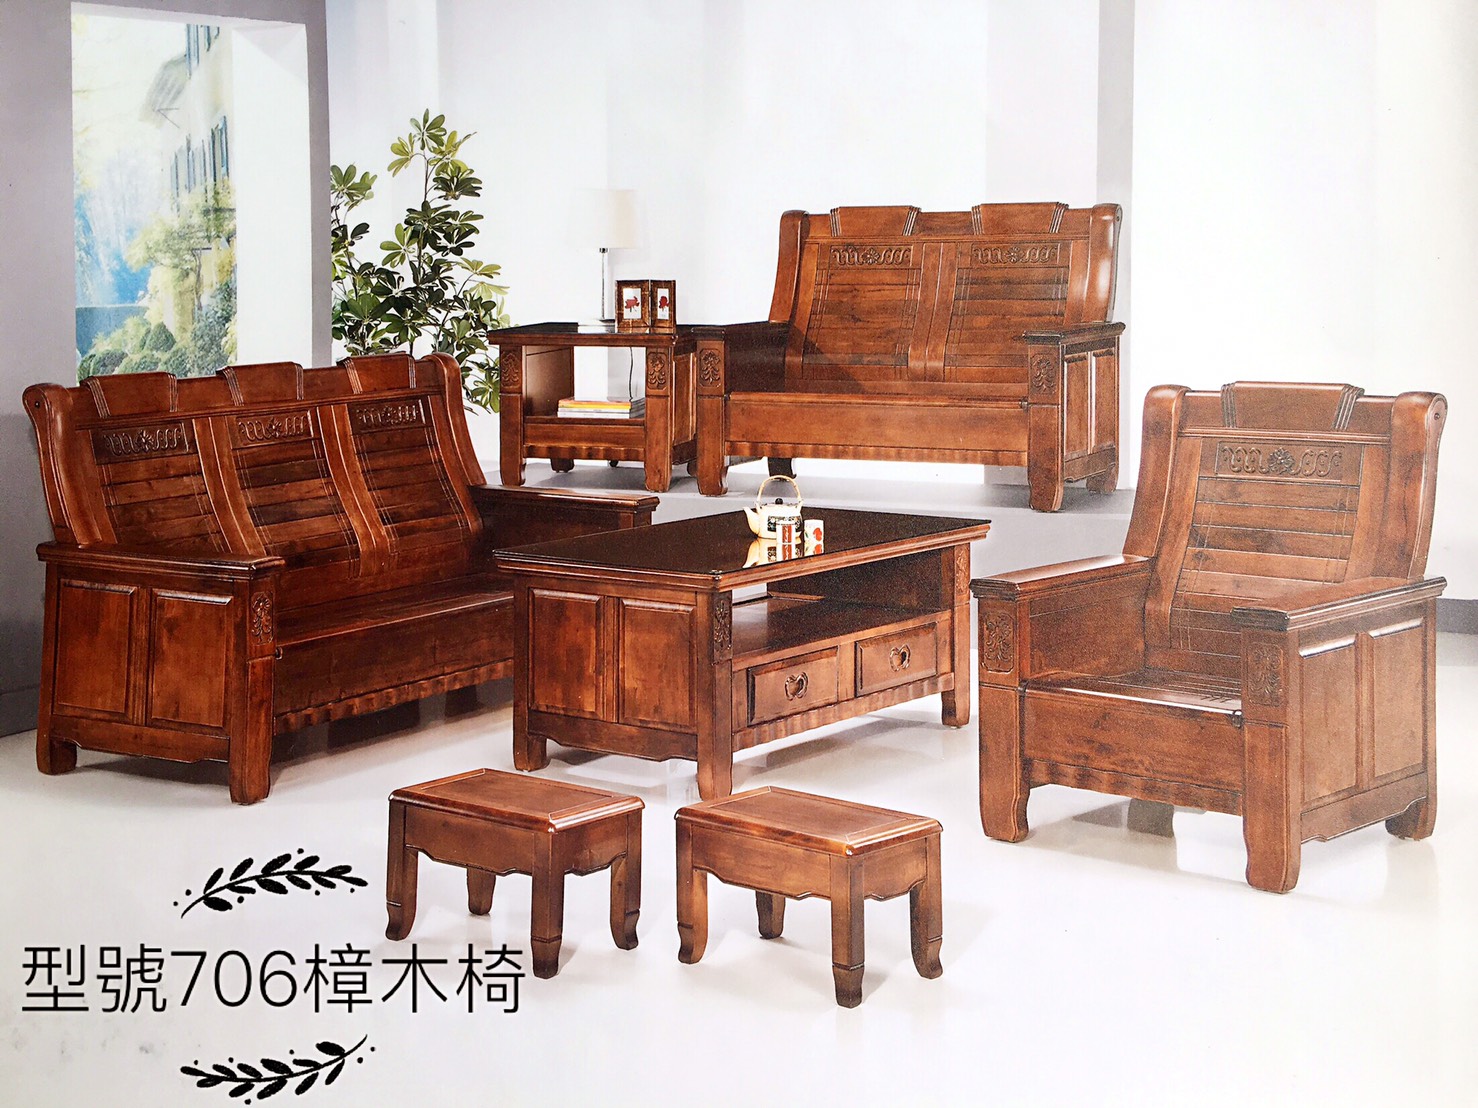 706樟木椅,台南傢俱,家具批發,家具,系統傢俱,傢俱批發,台南家具工廠,傢俱